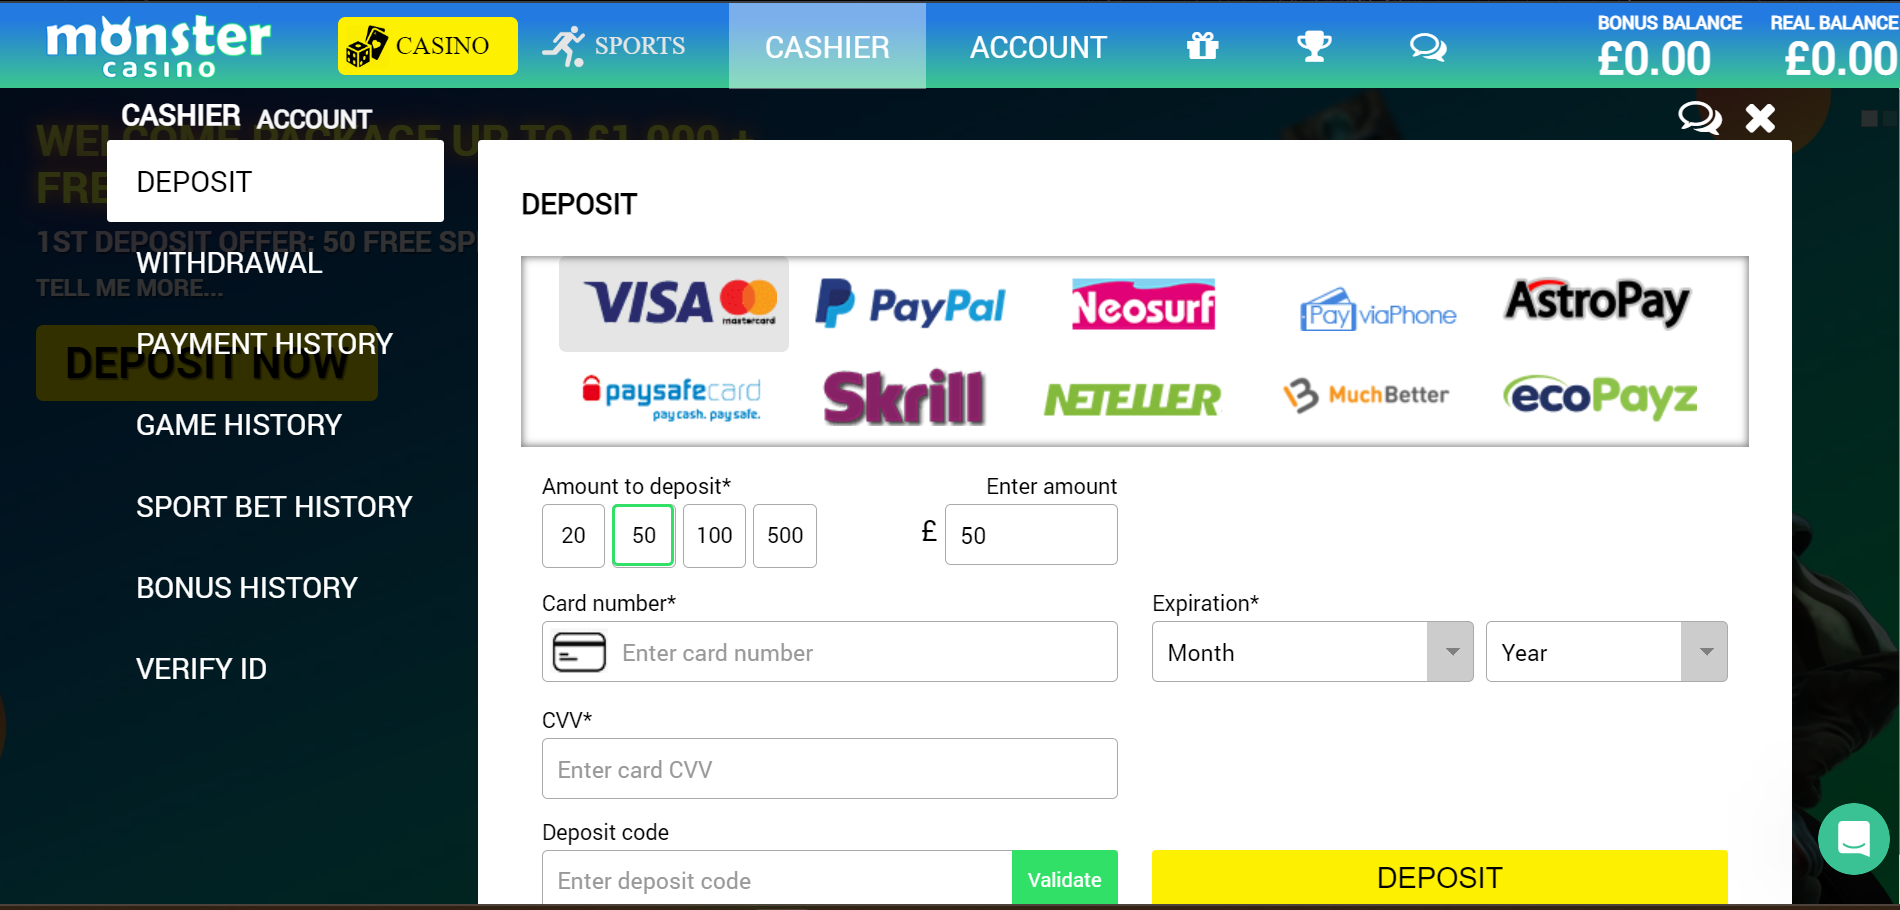 Choose a deposit method and enter your details